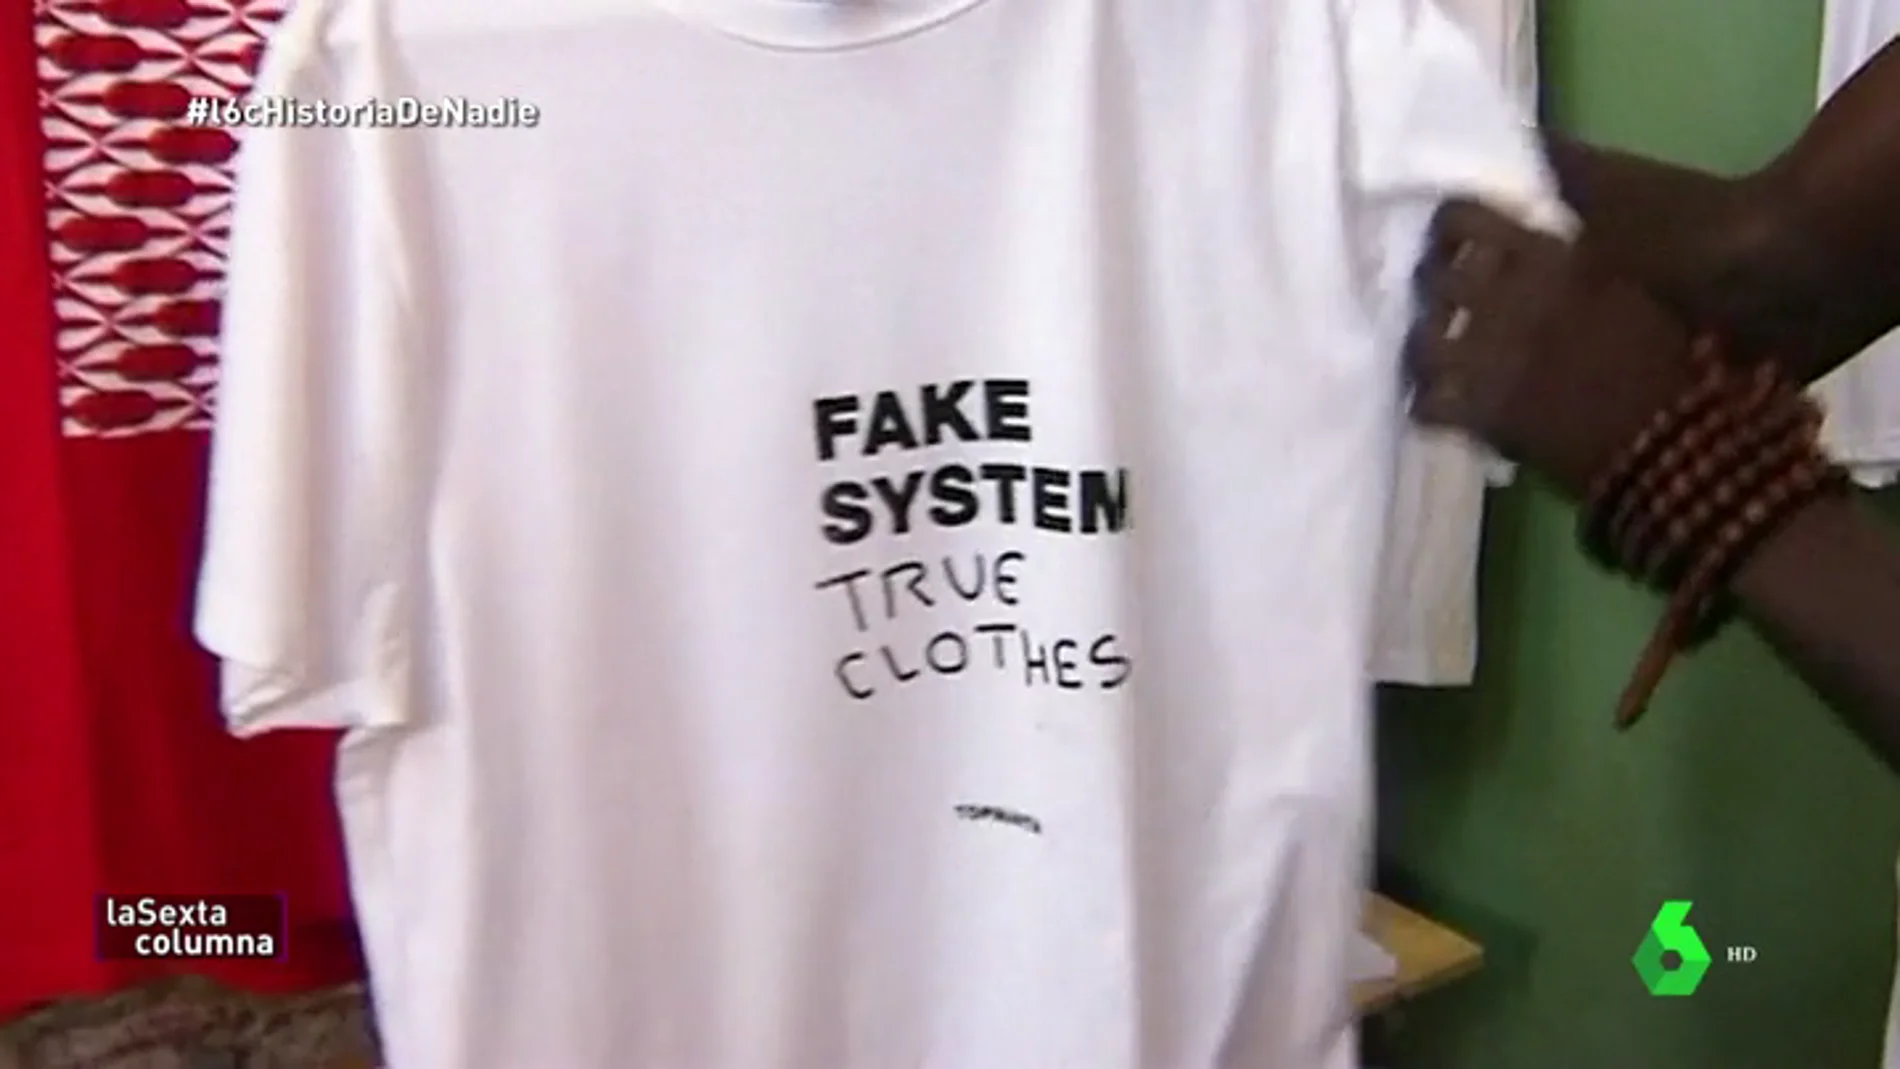 'Fake system, true clothes', la marca con la que los inmigrantes del top manta denuncian ser víctimas del sistema